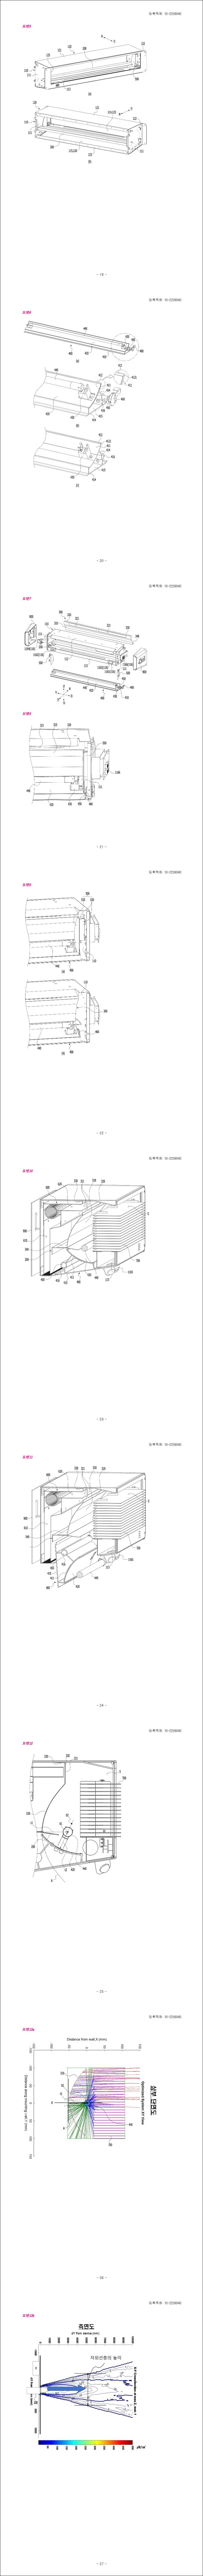 특허 제10-2259040호(가변형 상층부 자외선 살균 조사장치, 주식회사 플라랩, 